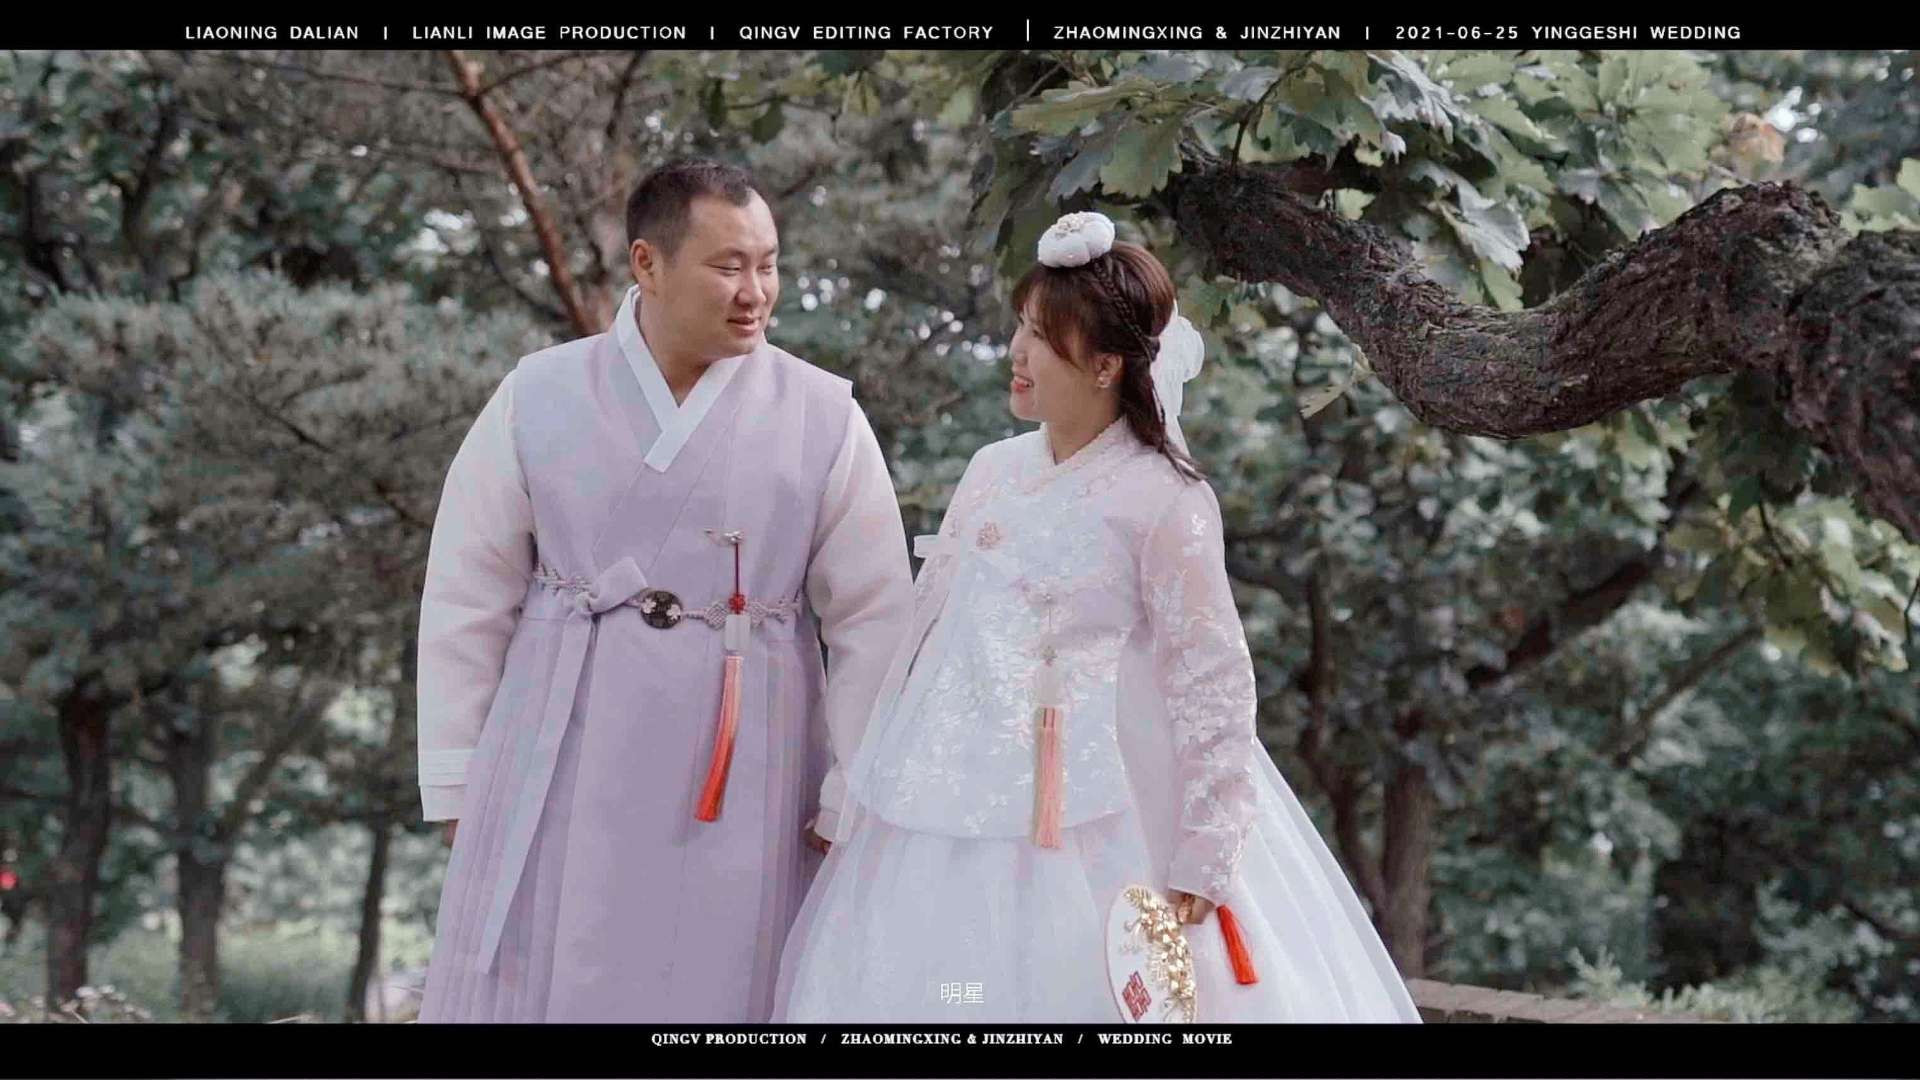 「“英歌石民宿里的朝鲜族新人”」 明星和知言的温馨婚礼